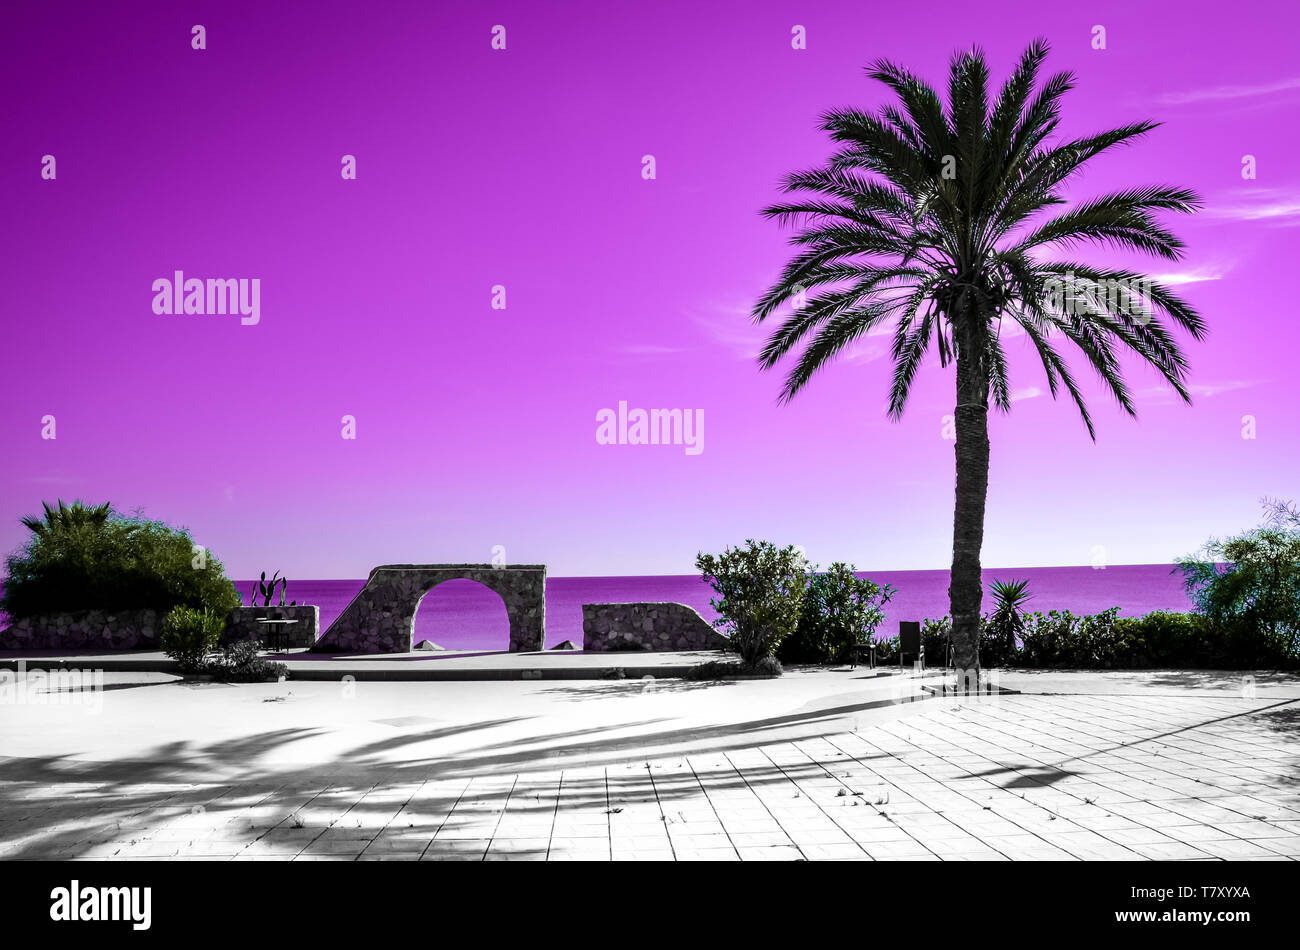 Palm Tree Silhouette mit rosa Himmel und Meer im Hintergrund. Verschiedene Arten von Tapeten mit farbverlauf Farben evozieren Sommer vibes und Ferienhäuser Gefühle. Stockfoto